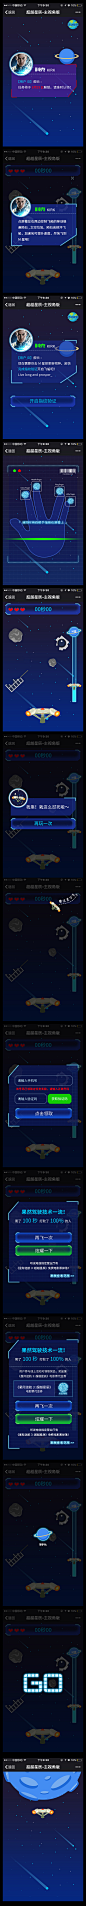 星际迷航 H5 星空 星辰 星球 飞船 飞行  小游戏 图标 弹窗 创意 扁平 矢量图 UI 